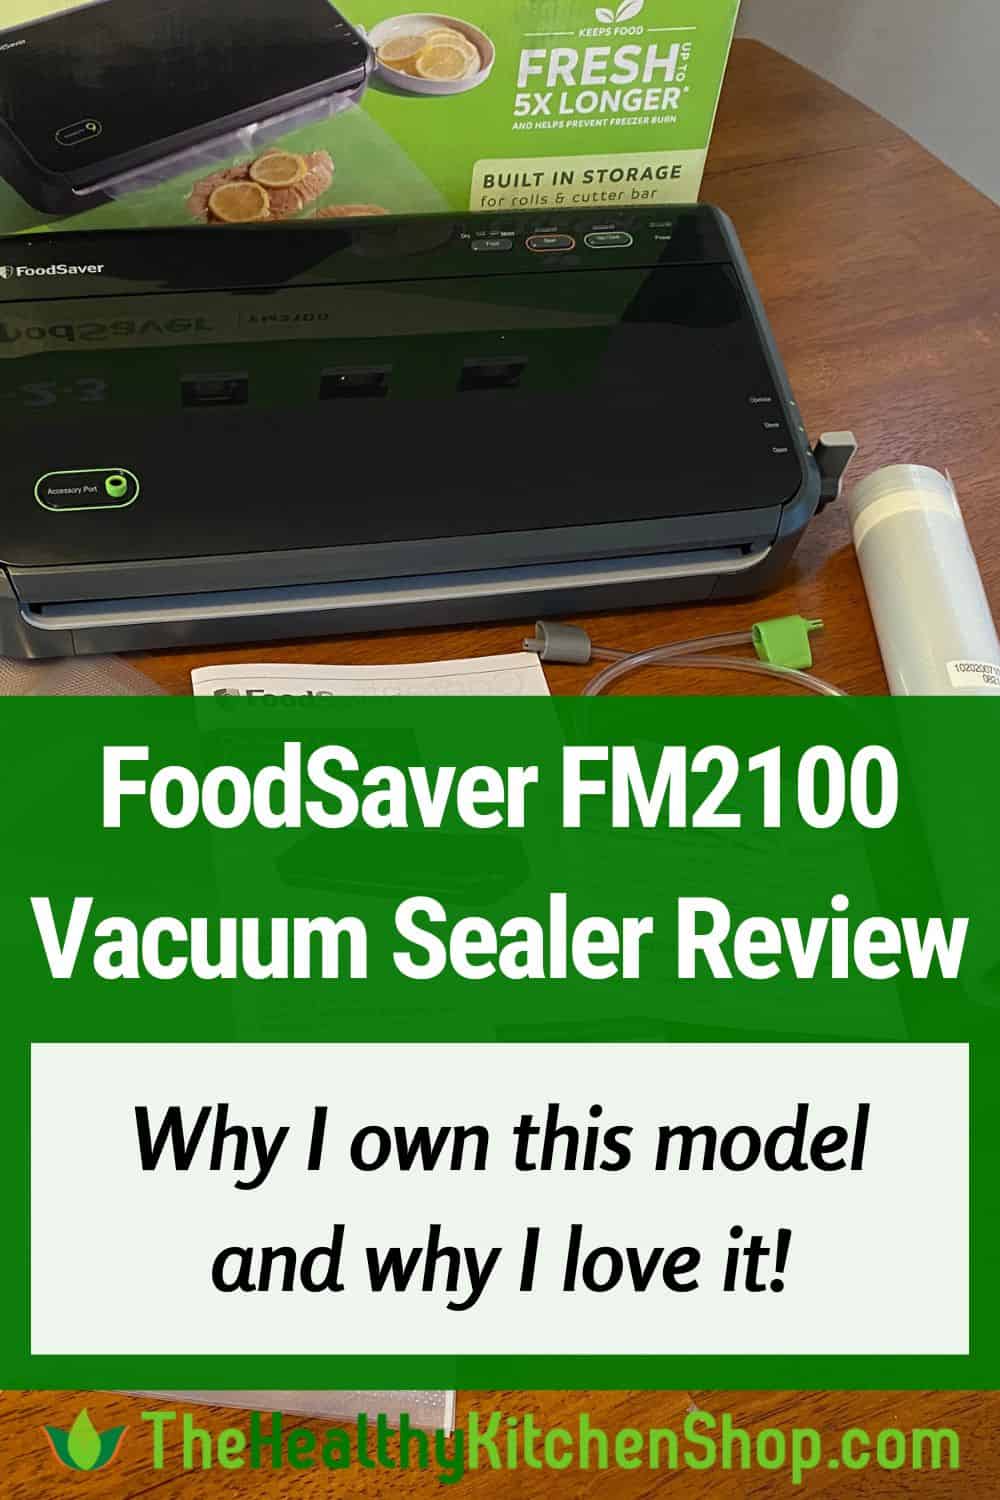 FoodSaver FM2100 Vacuum Sealer Review